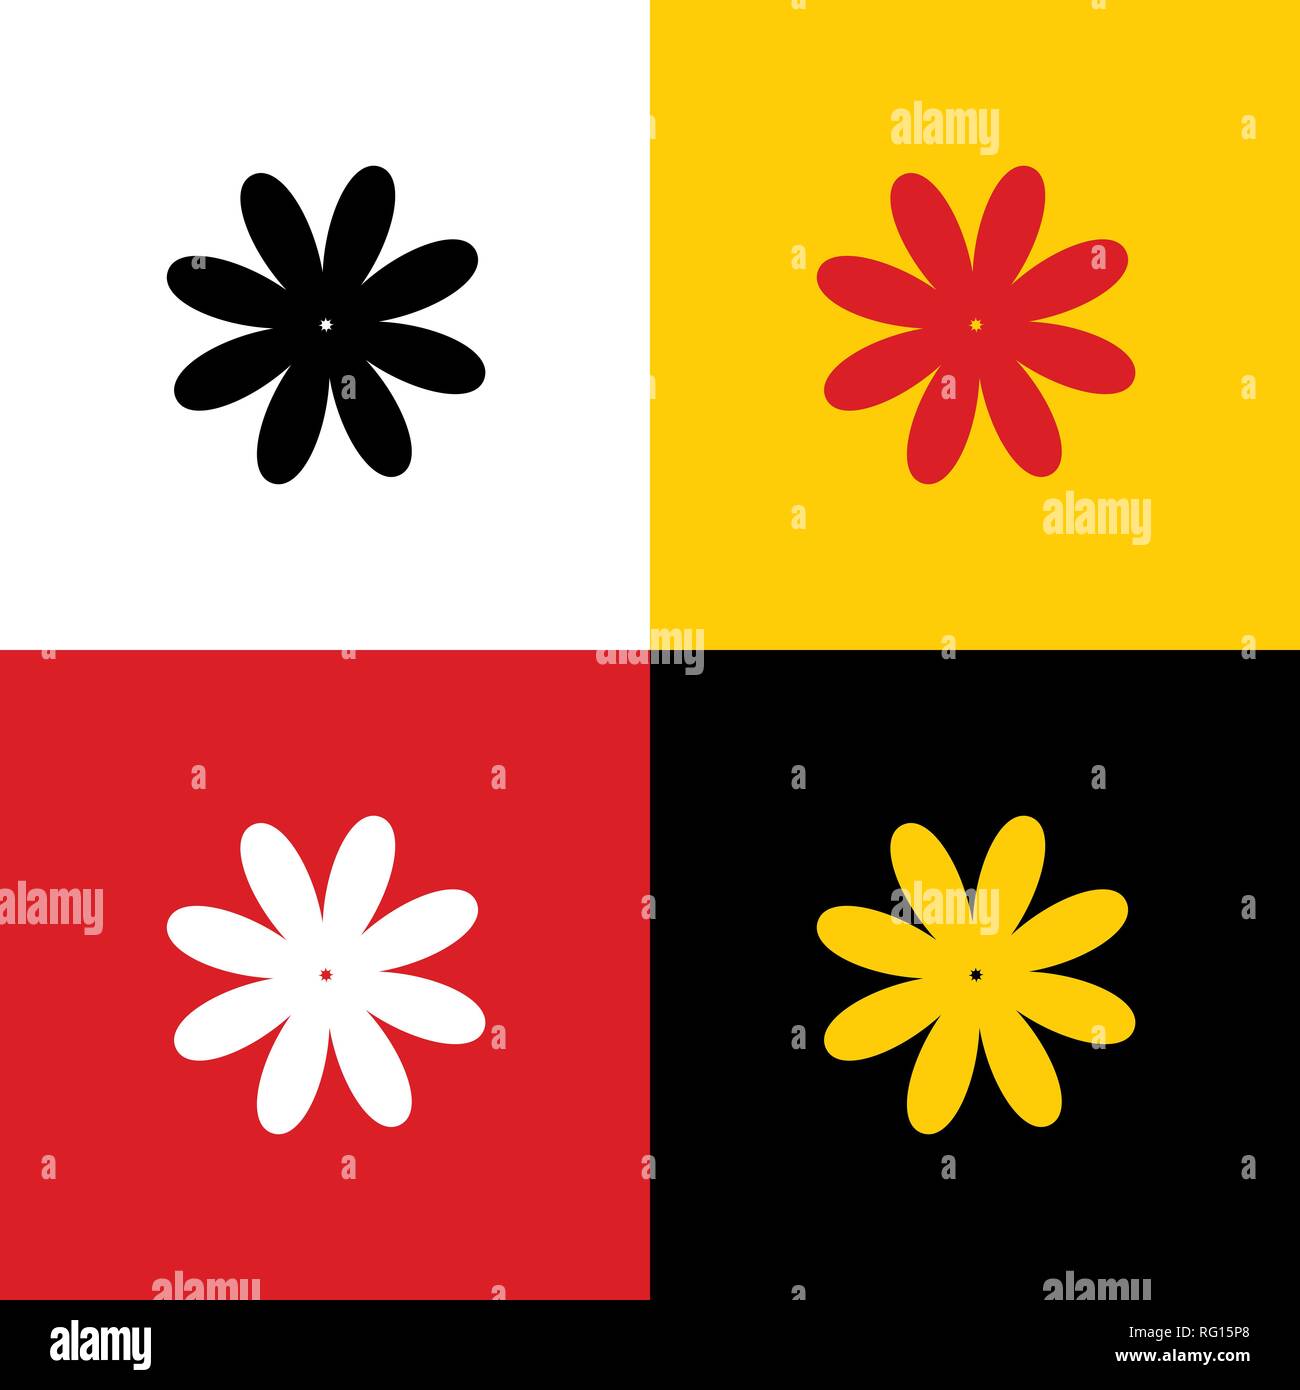 Flower anmelden Abbildung. Vektor. Symbole der deutschen Flagge auf entsprechenden Farben als Hintergrund. Stock Vektor